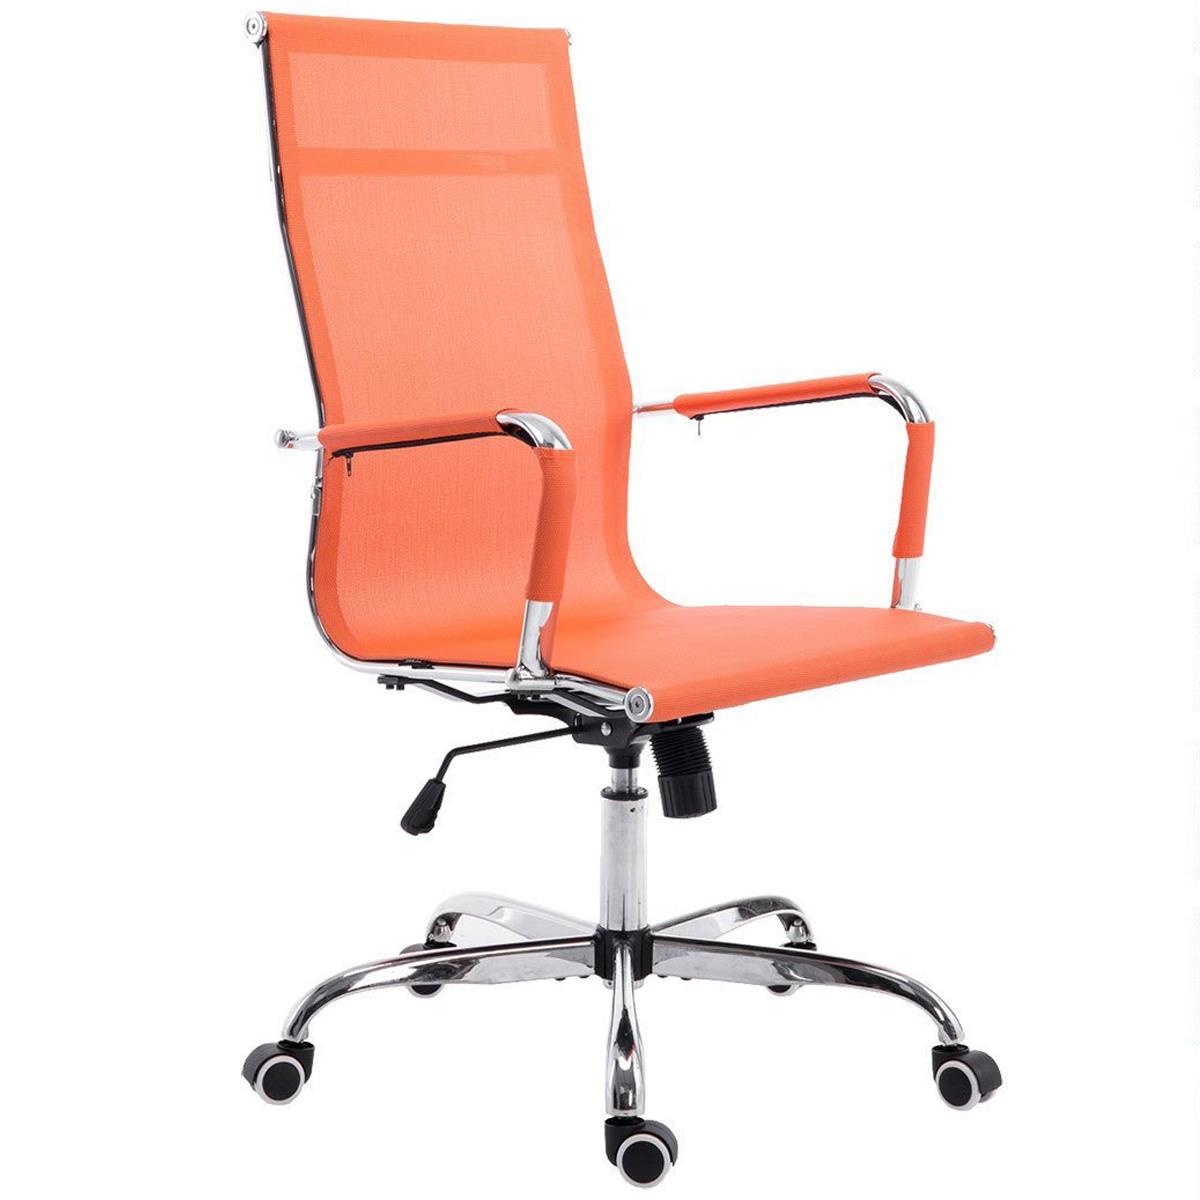 Cadeira de escritório ITALICA, Estrutura Metálica, Bonito Design em Malha Transpirável cor Laranja